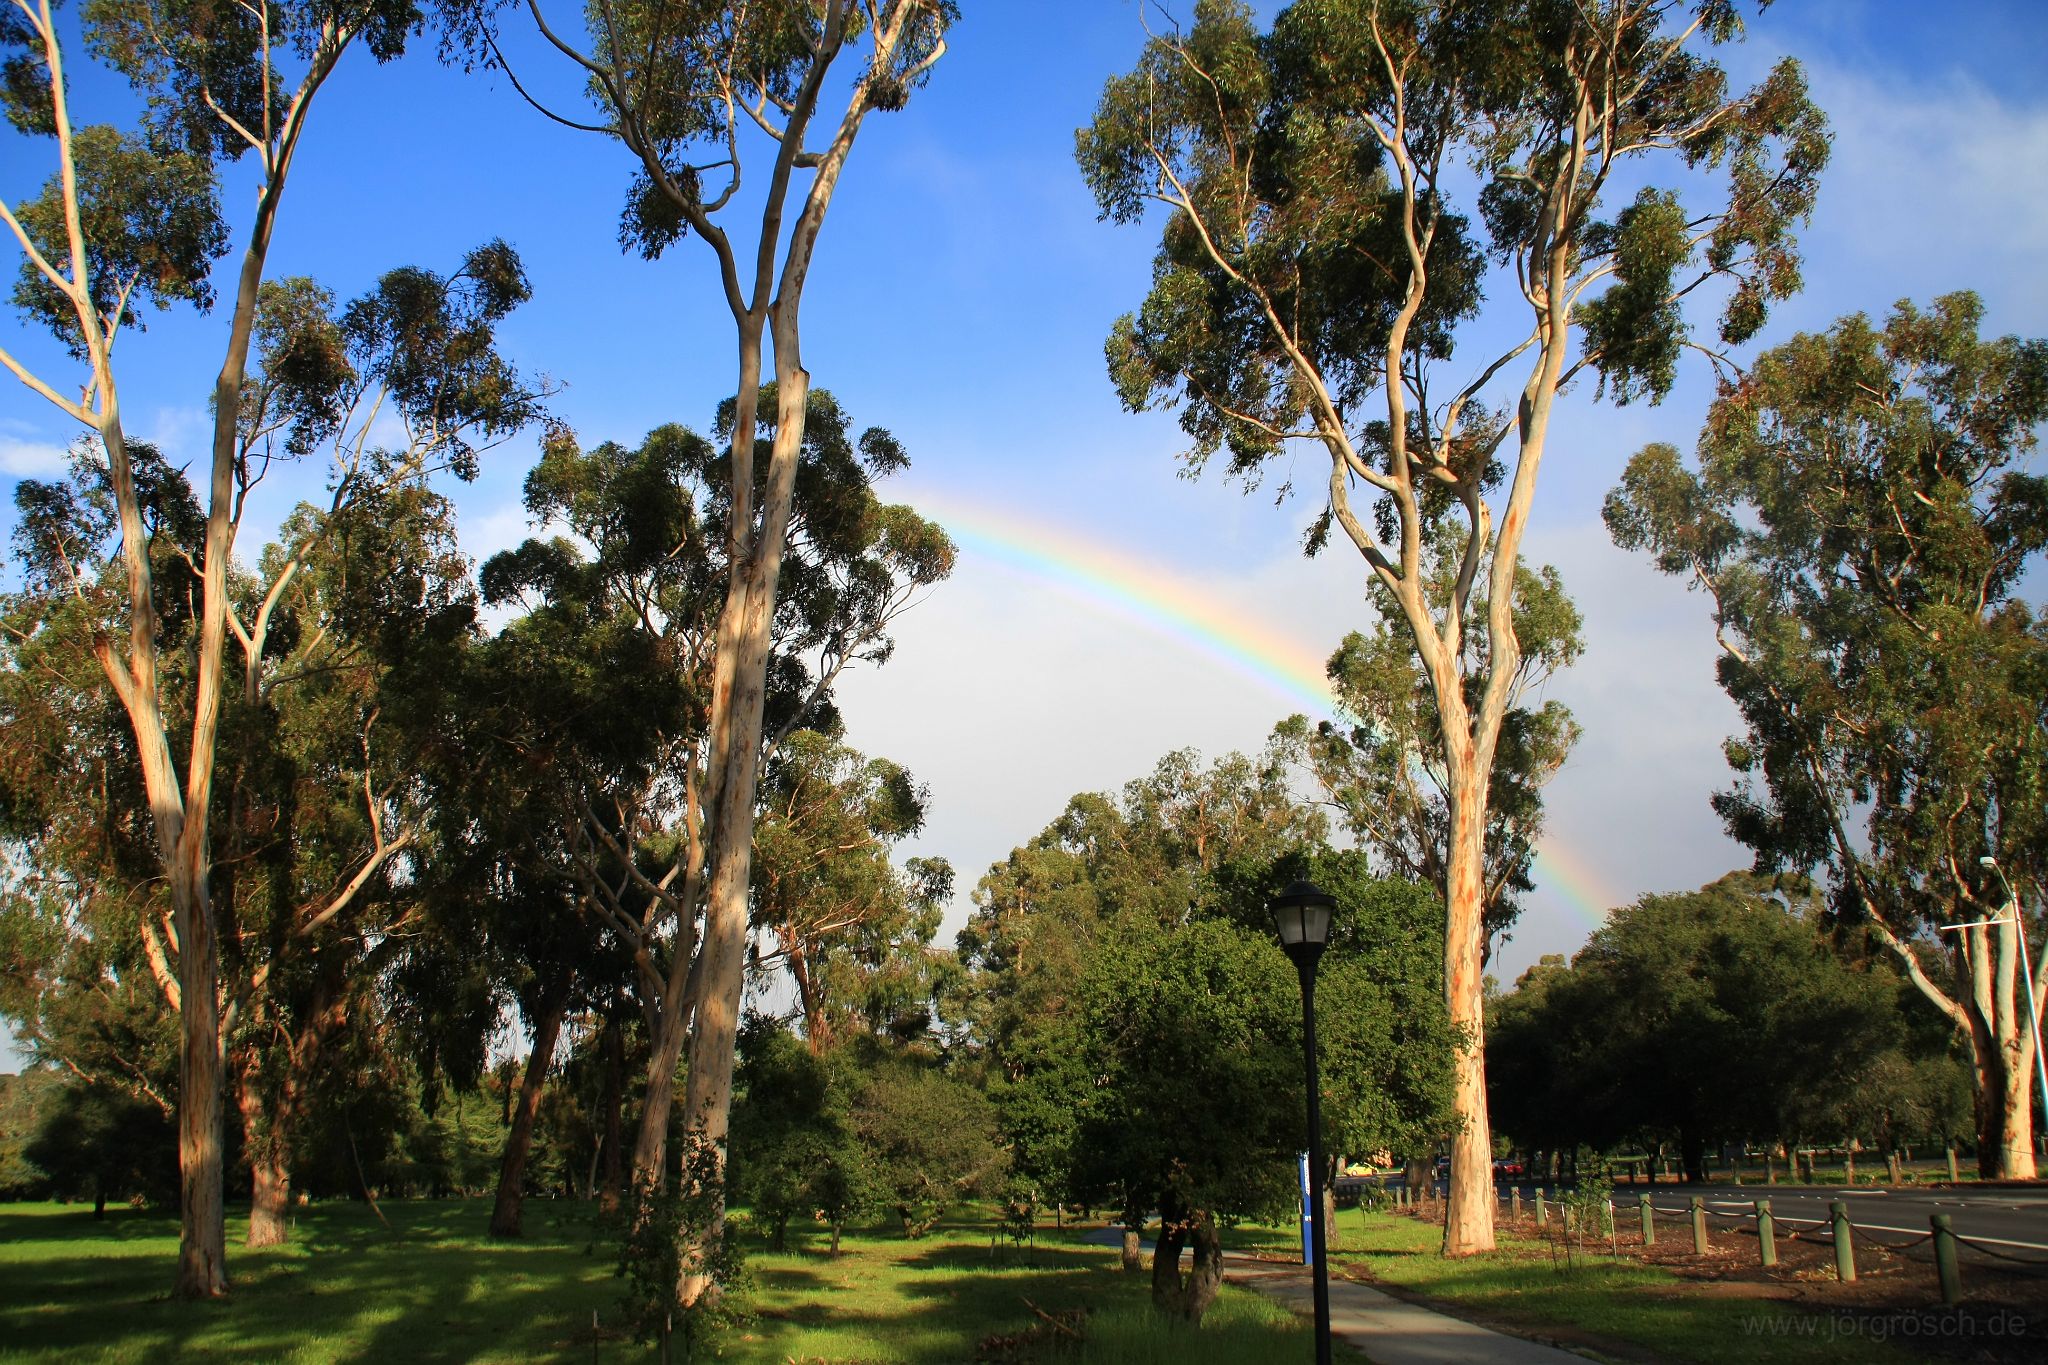 20090304-2-stanford-regenbogen.jpg - Regenbogen über der Stanford University